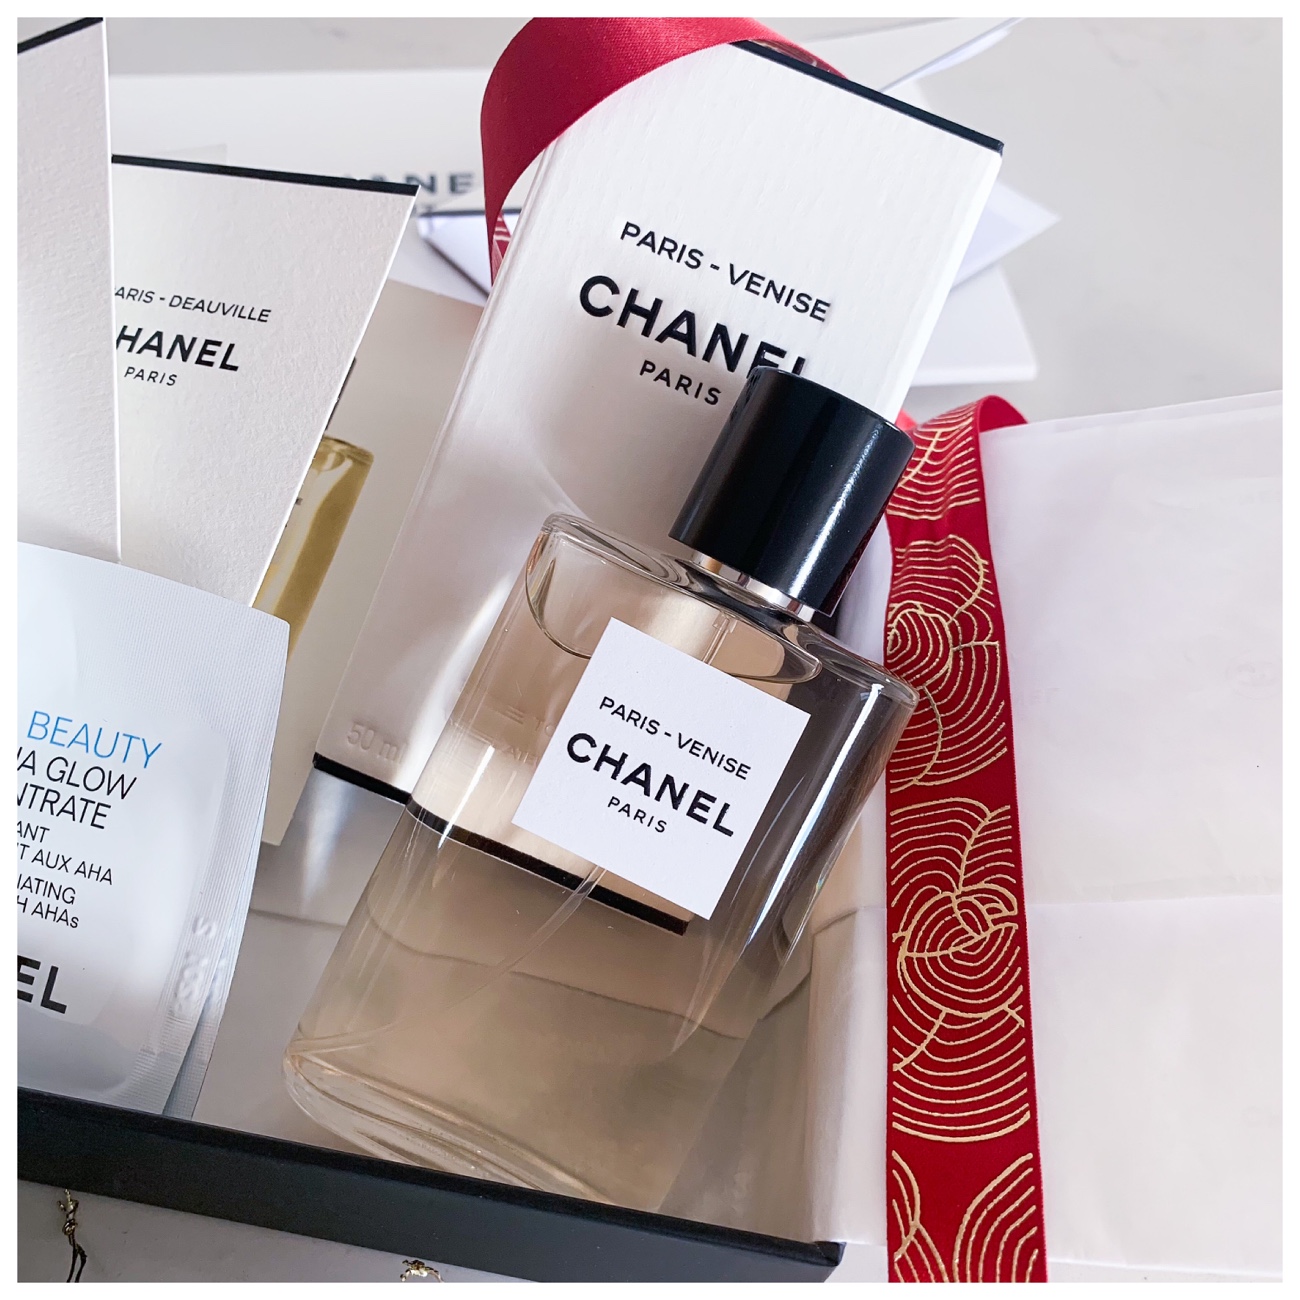 Les Eaux de Chanel - Paris